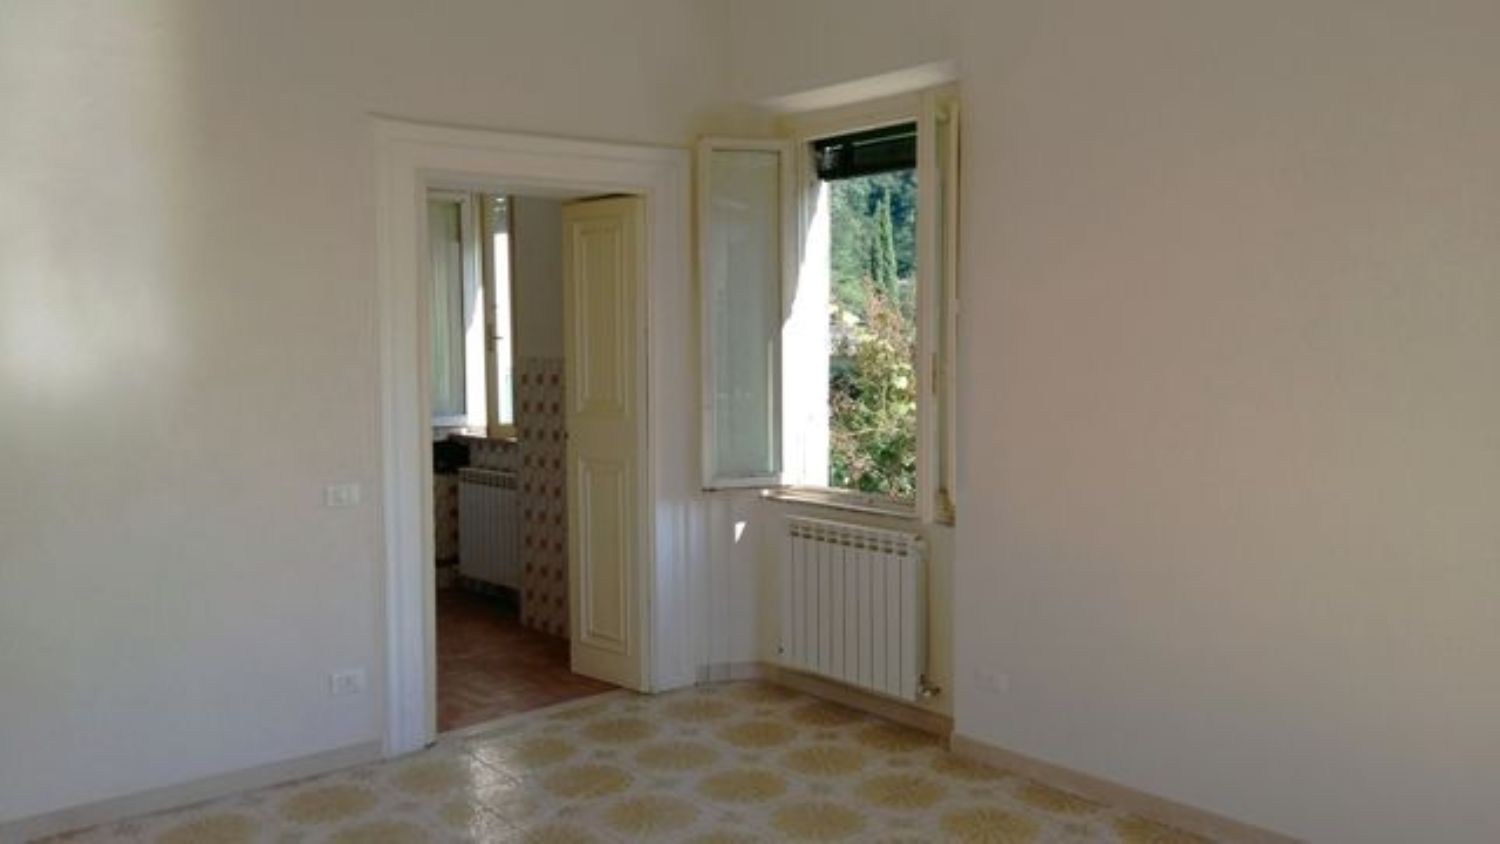 Appartamento in vendita a Borgo a Mozzano, 5 locali, prezzo € 85.000 | PortaleAgenzieImmobiliari.it